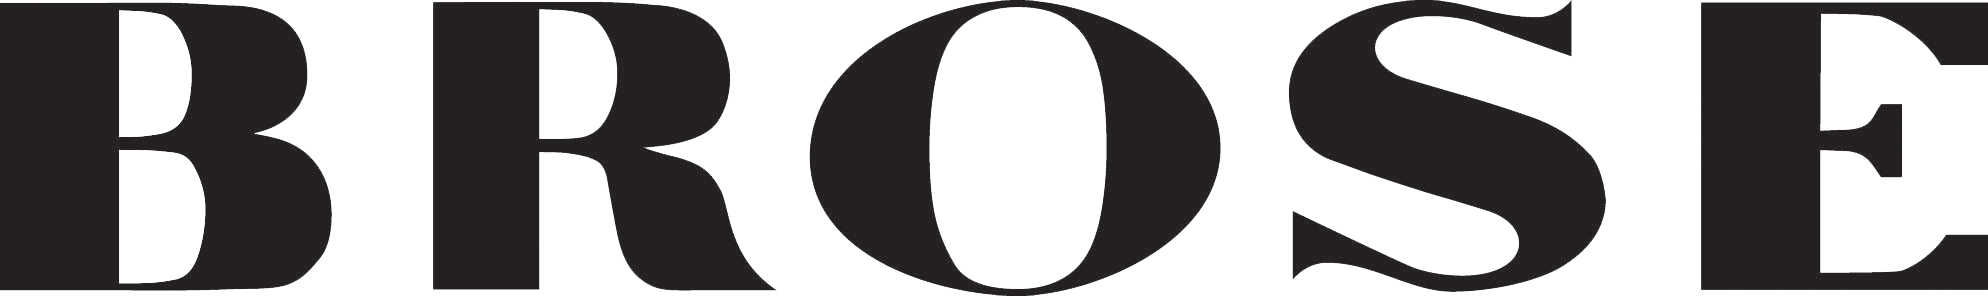 BROSE logo